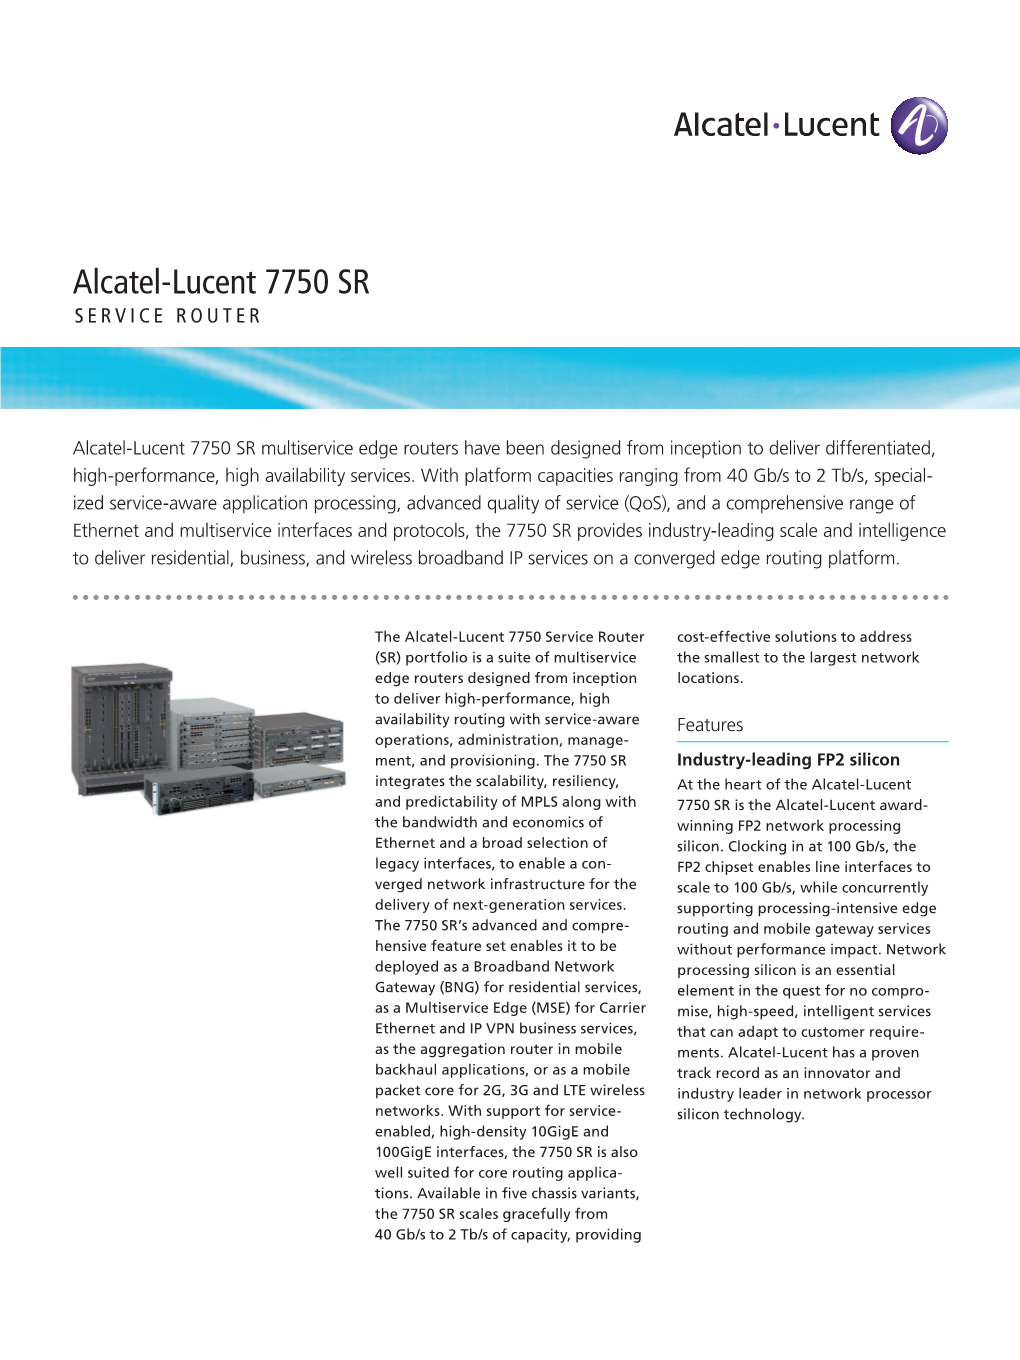 Alcatel-Lucent 7750 SR SERVICE ROUTER